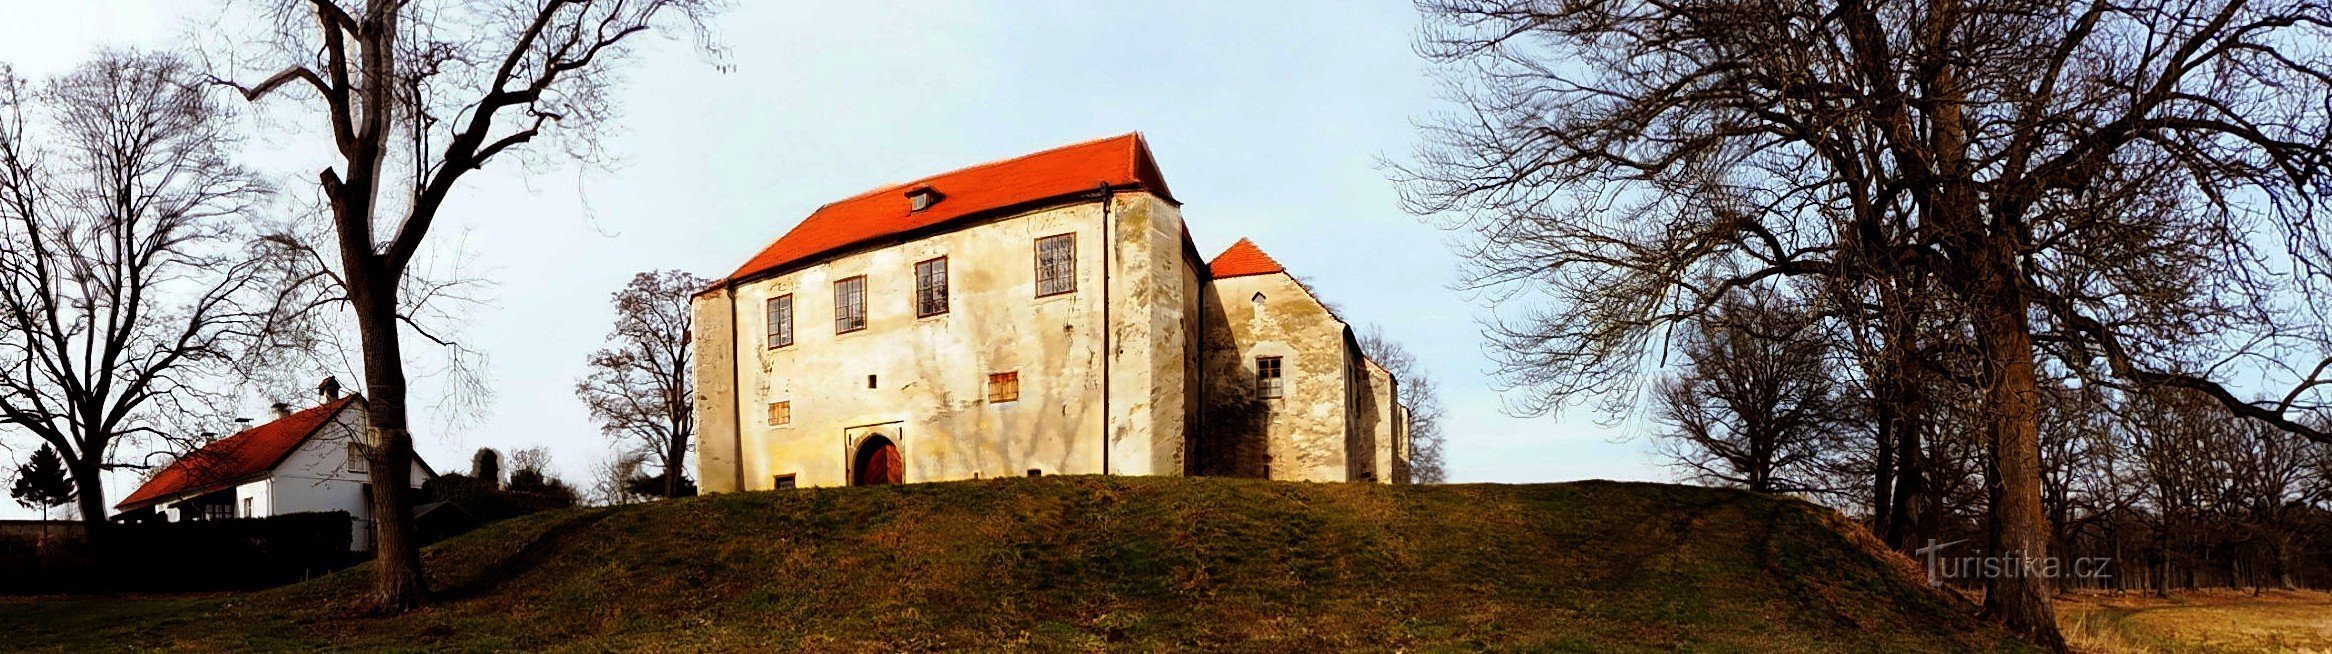 Gótikus erőd Zuknštejn